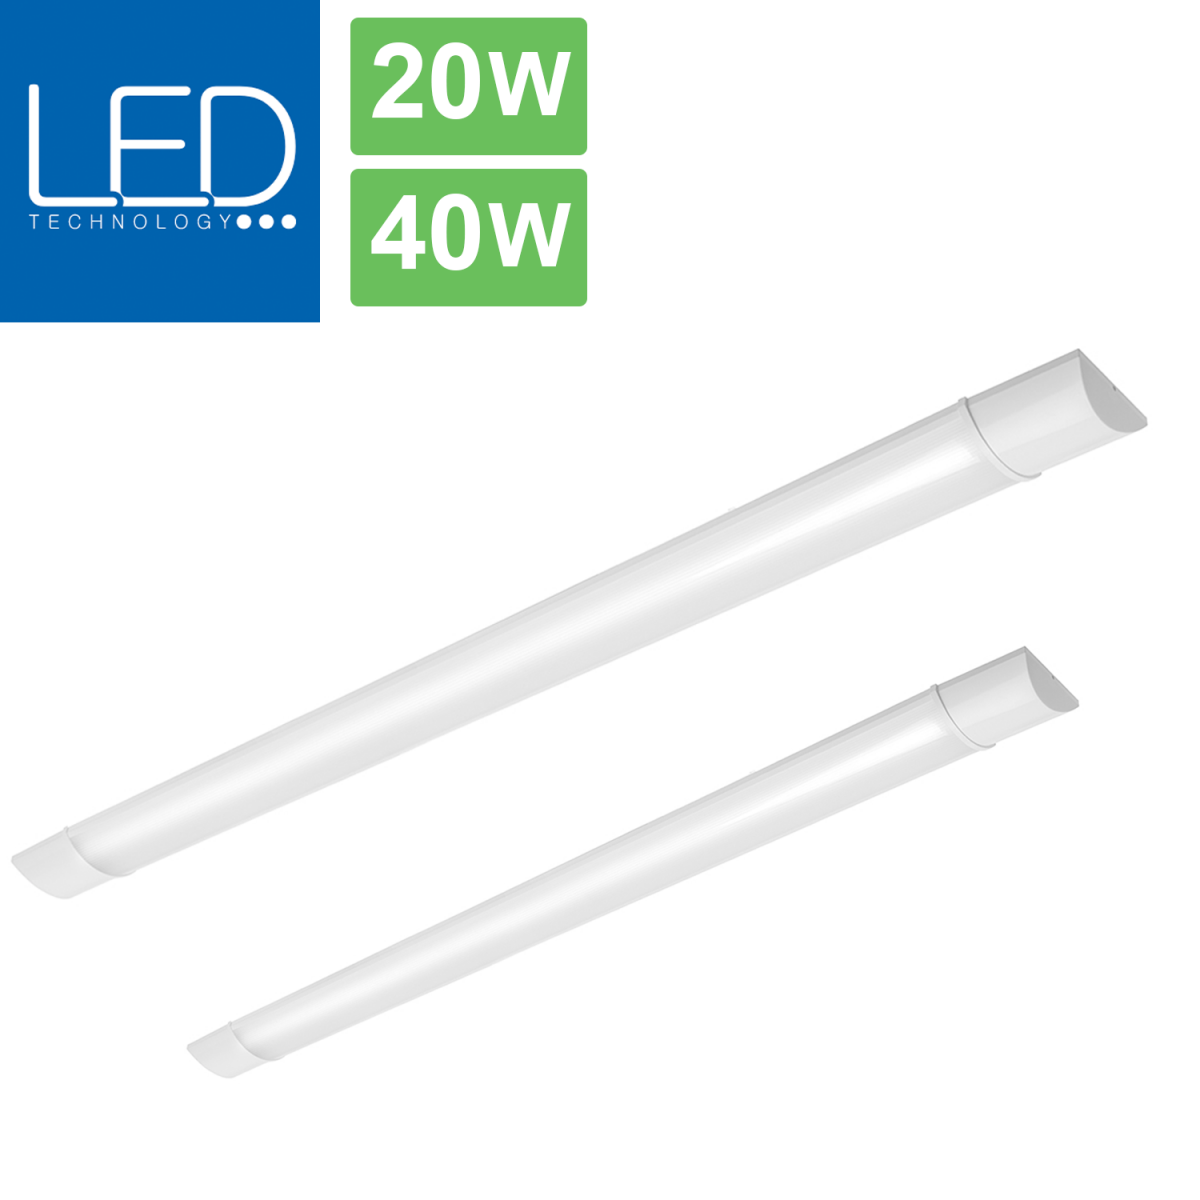 flache LED-Lichtleiste ideal für Büro, Werkstatt oder Keller / IP 40